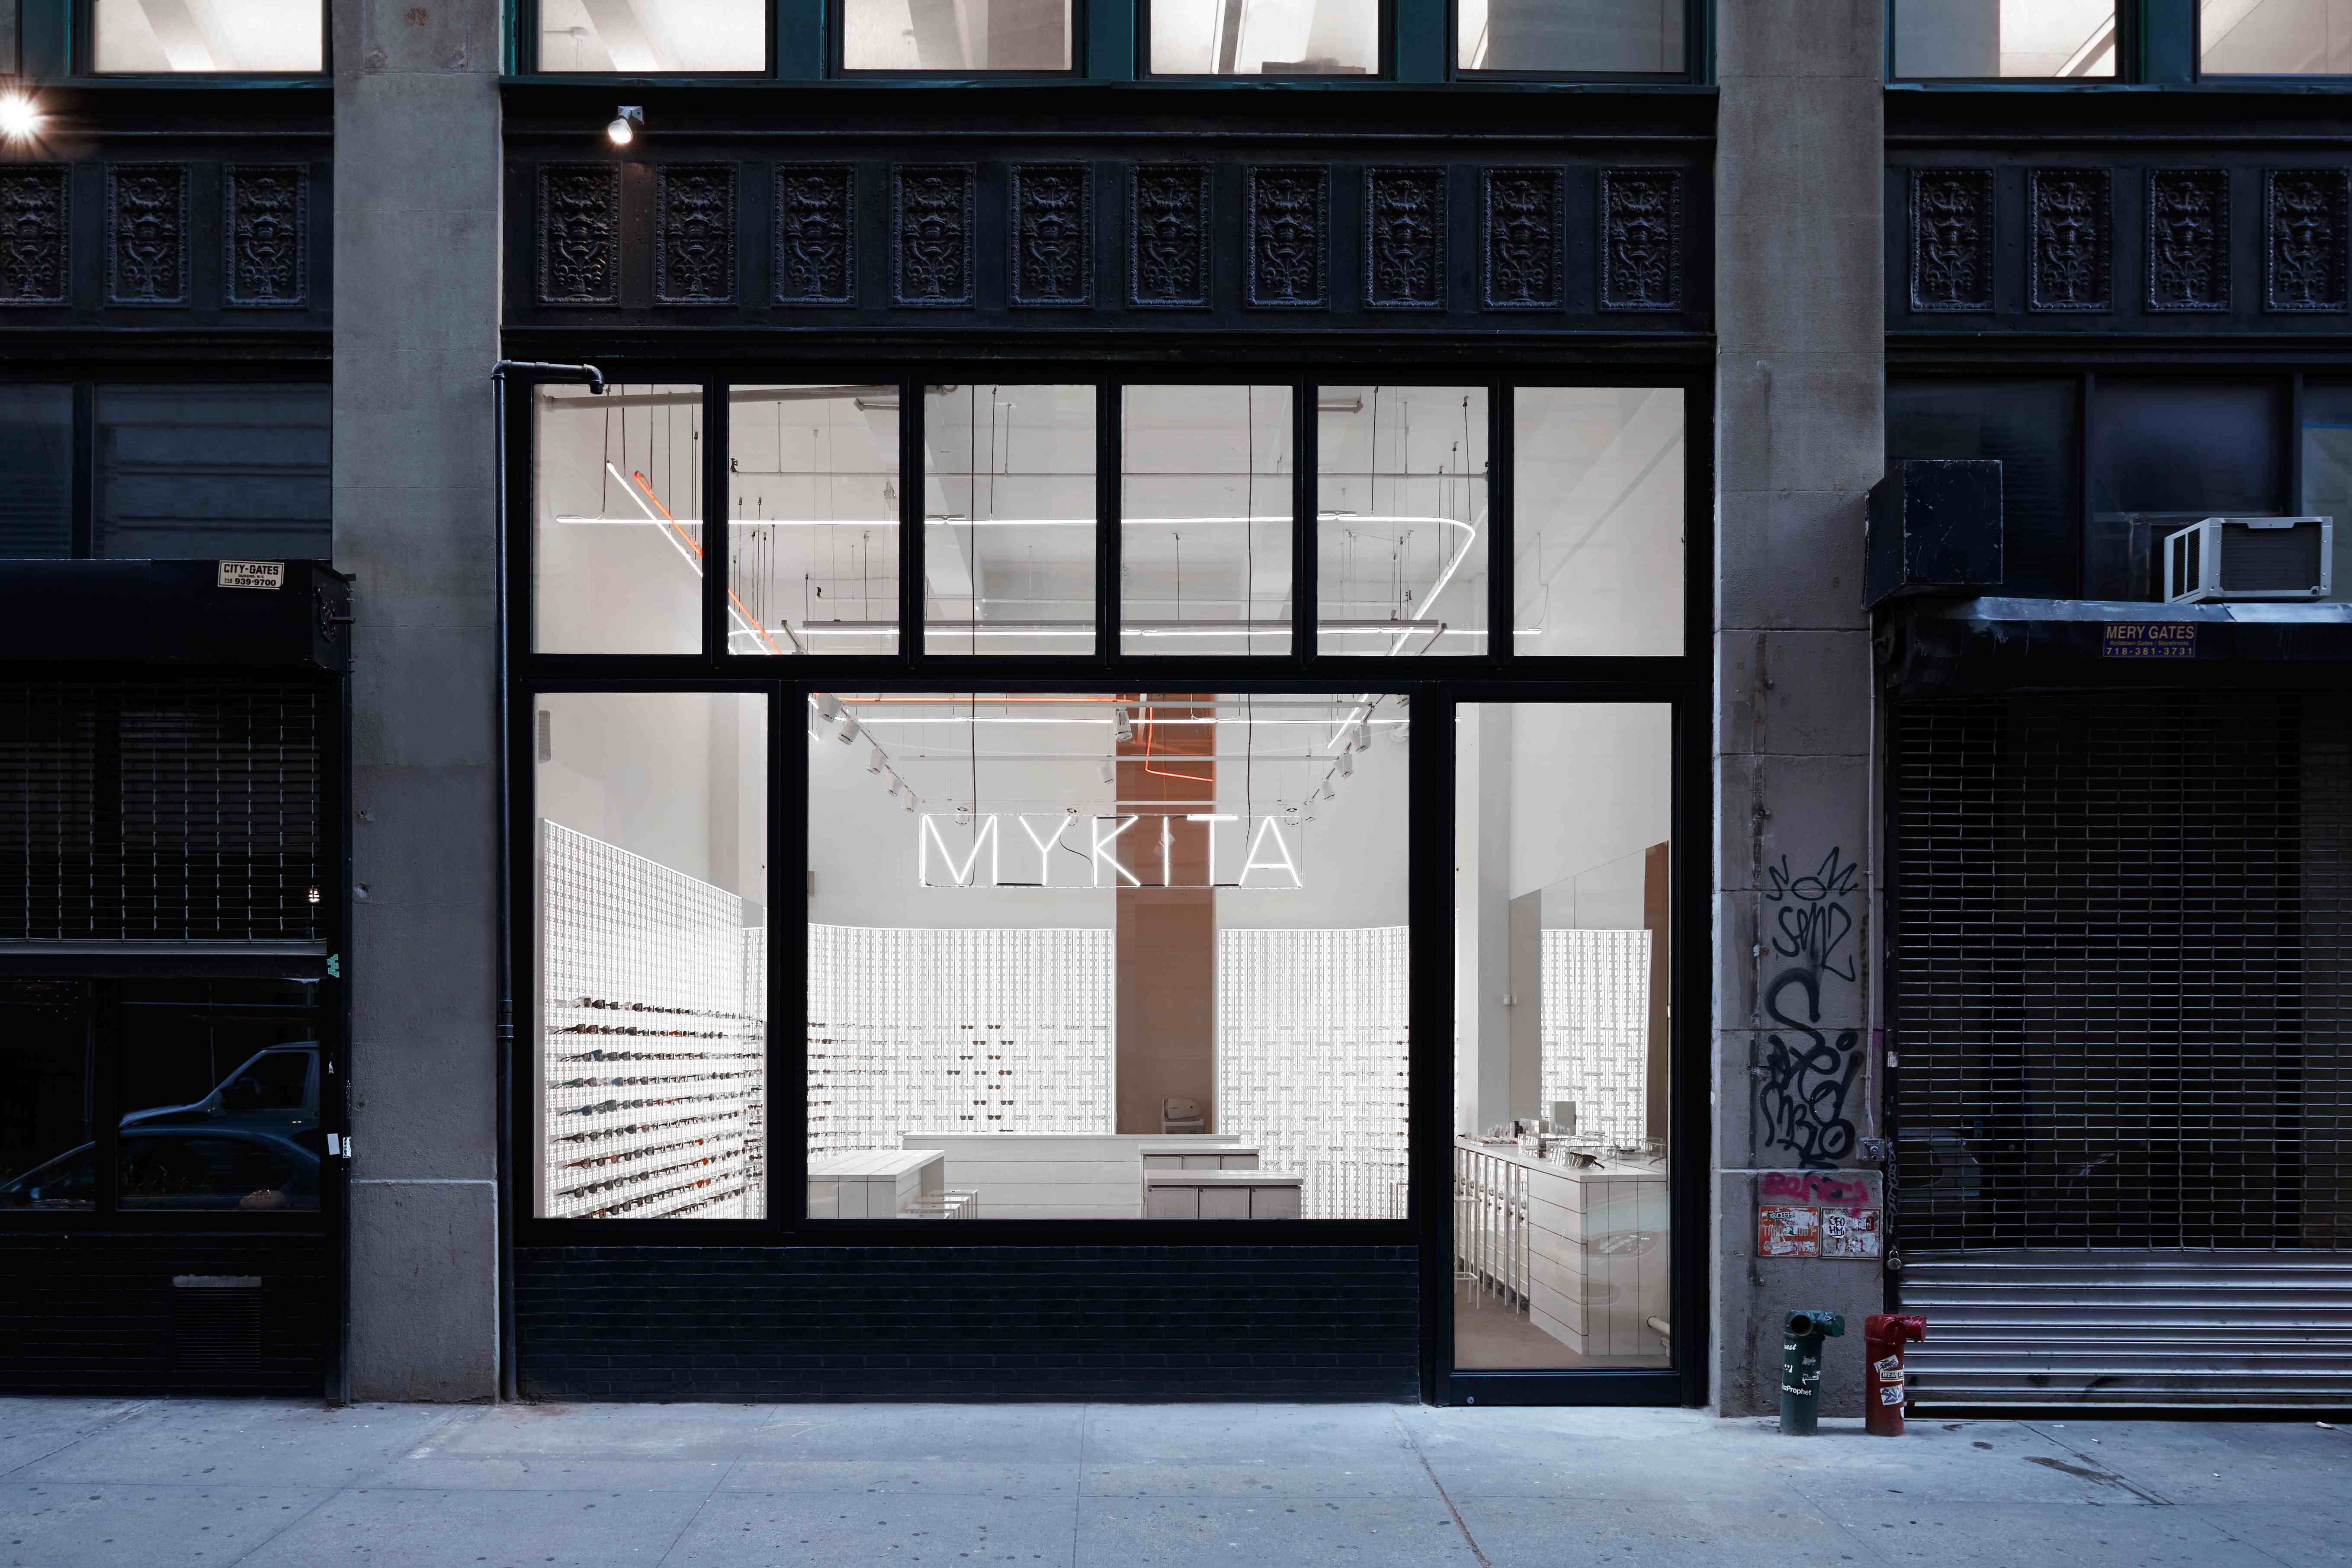 Mykita New York City Shop: inaugurato il nuovo store in stile Art Déco